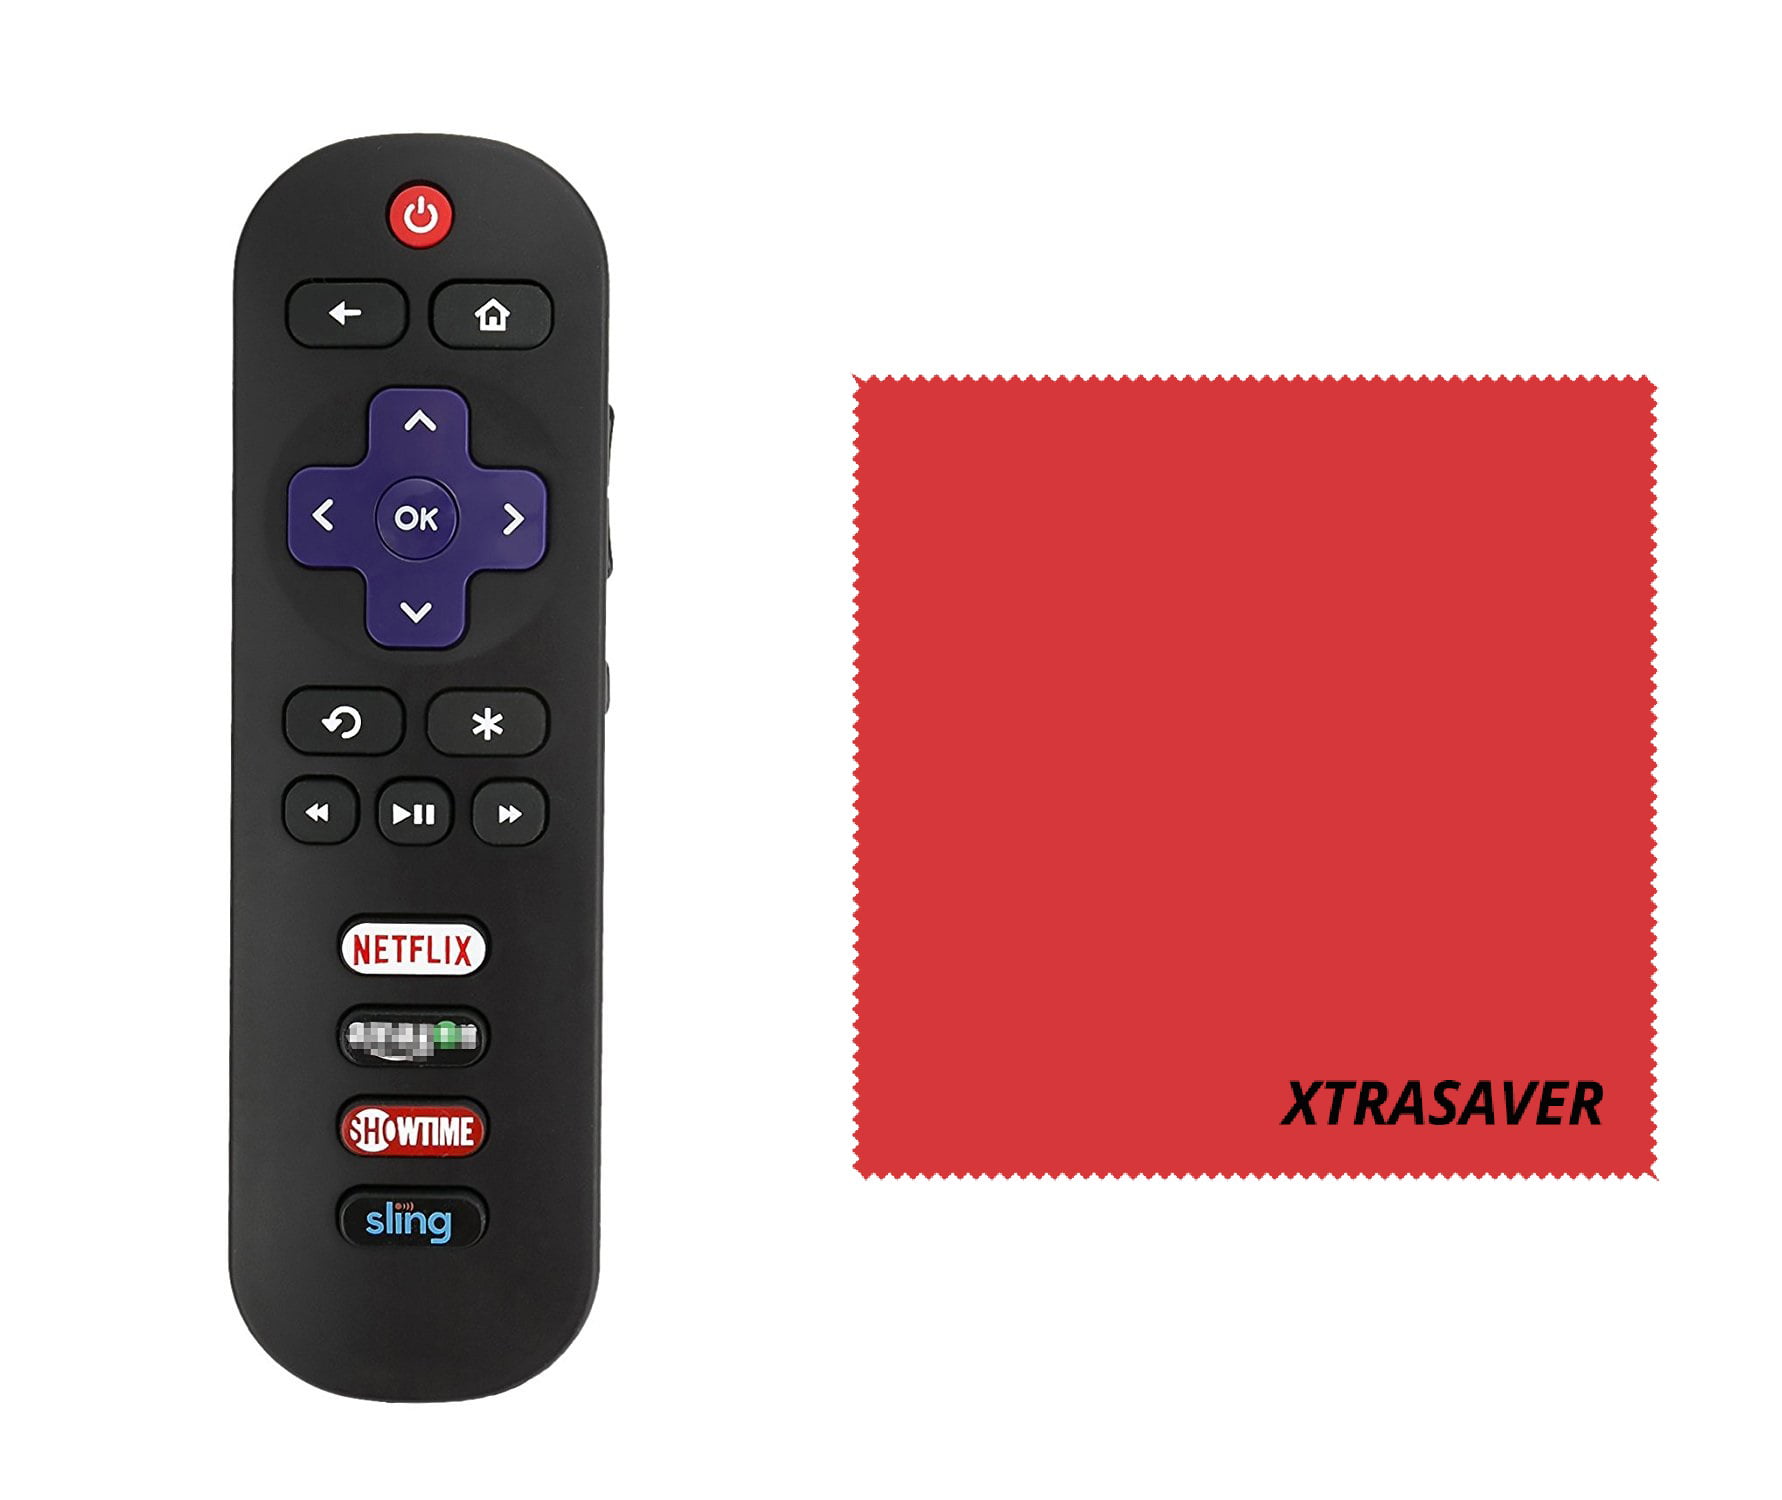 New Original Hisense En3b32hs Roku Tv Remote Control W Smart Channel Keys With Xtrasaver Microfiber Cloths Walmart Com Walmart Com